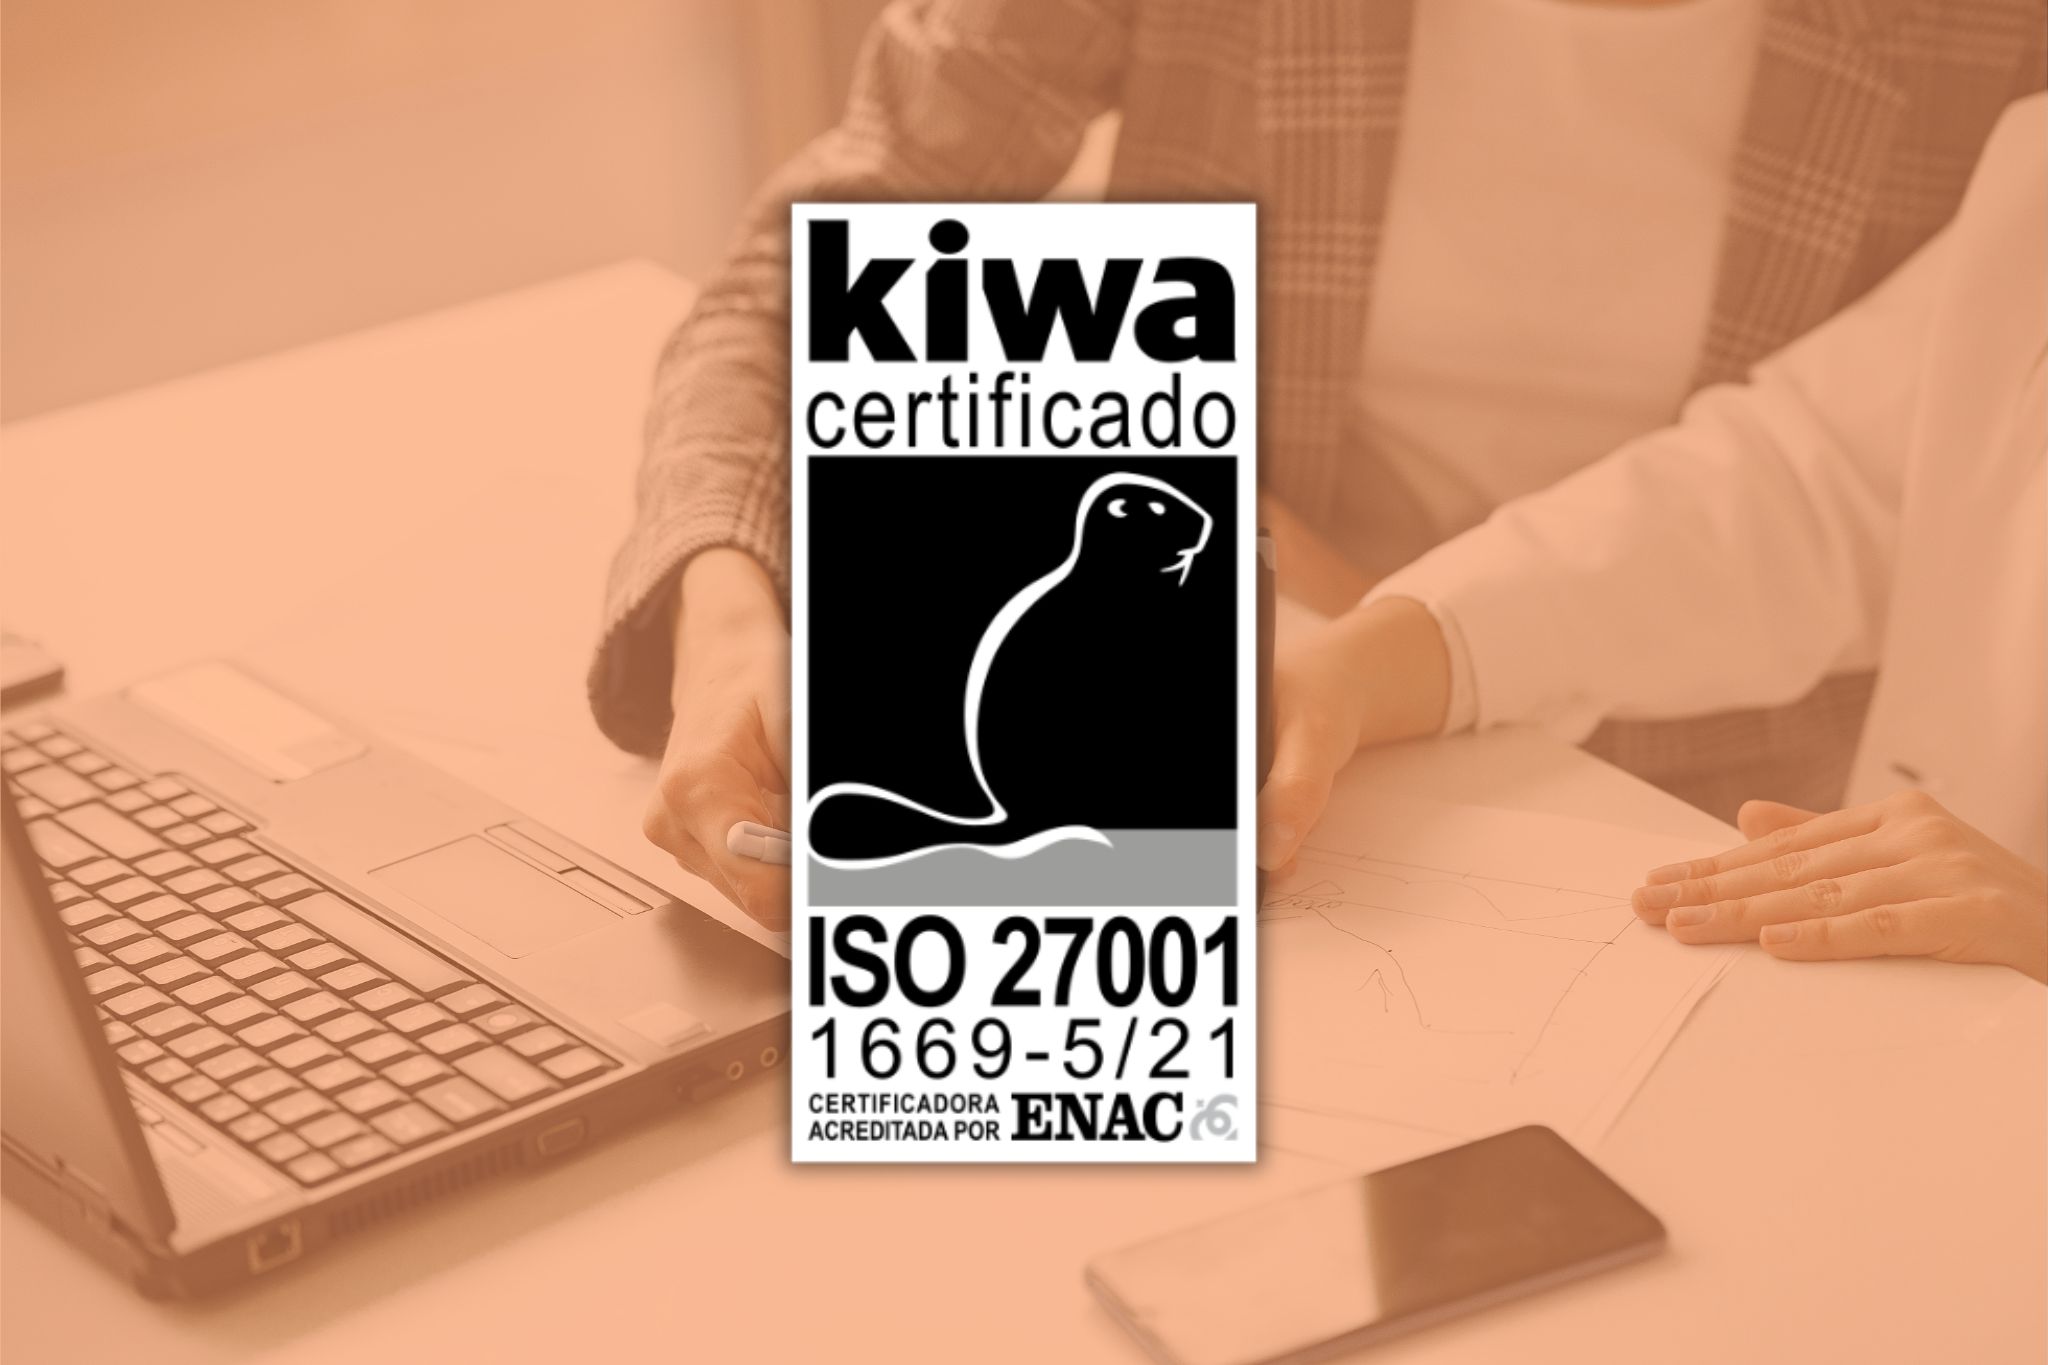 Logo della certificazione ISO 27001 sovrapposto su un'immagine che mostra due impiegati che lavorano a una scrivania davanti a un computer portatile